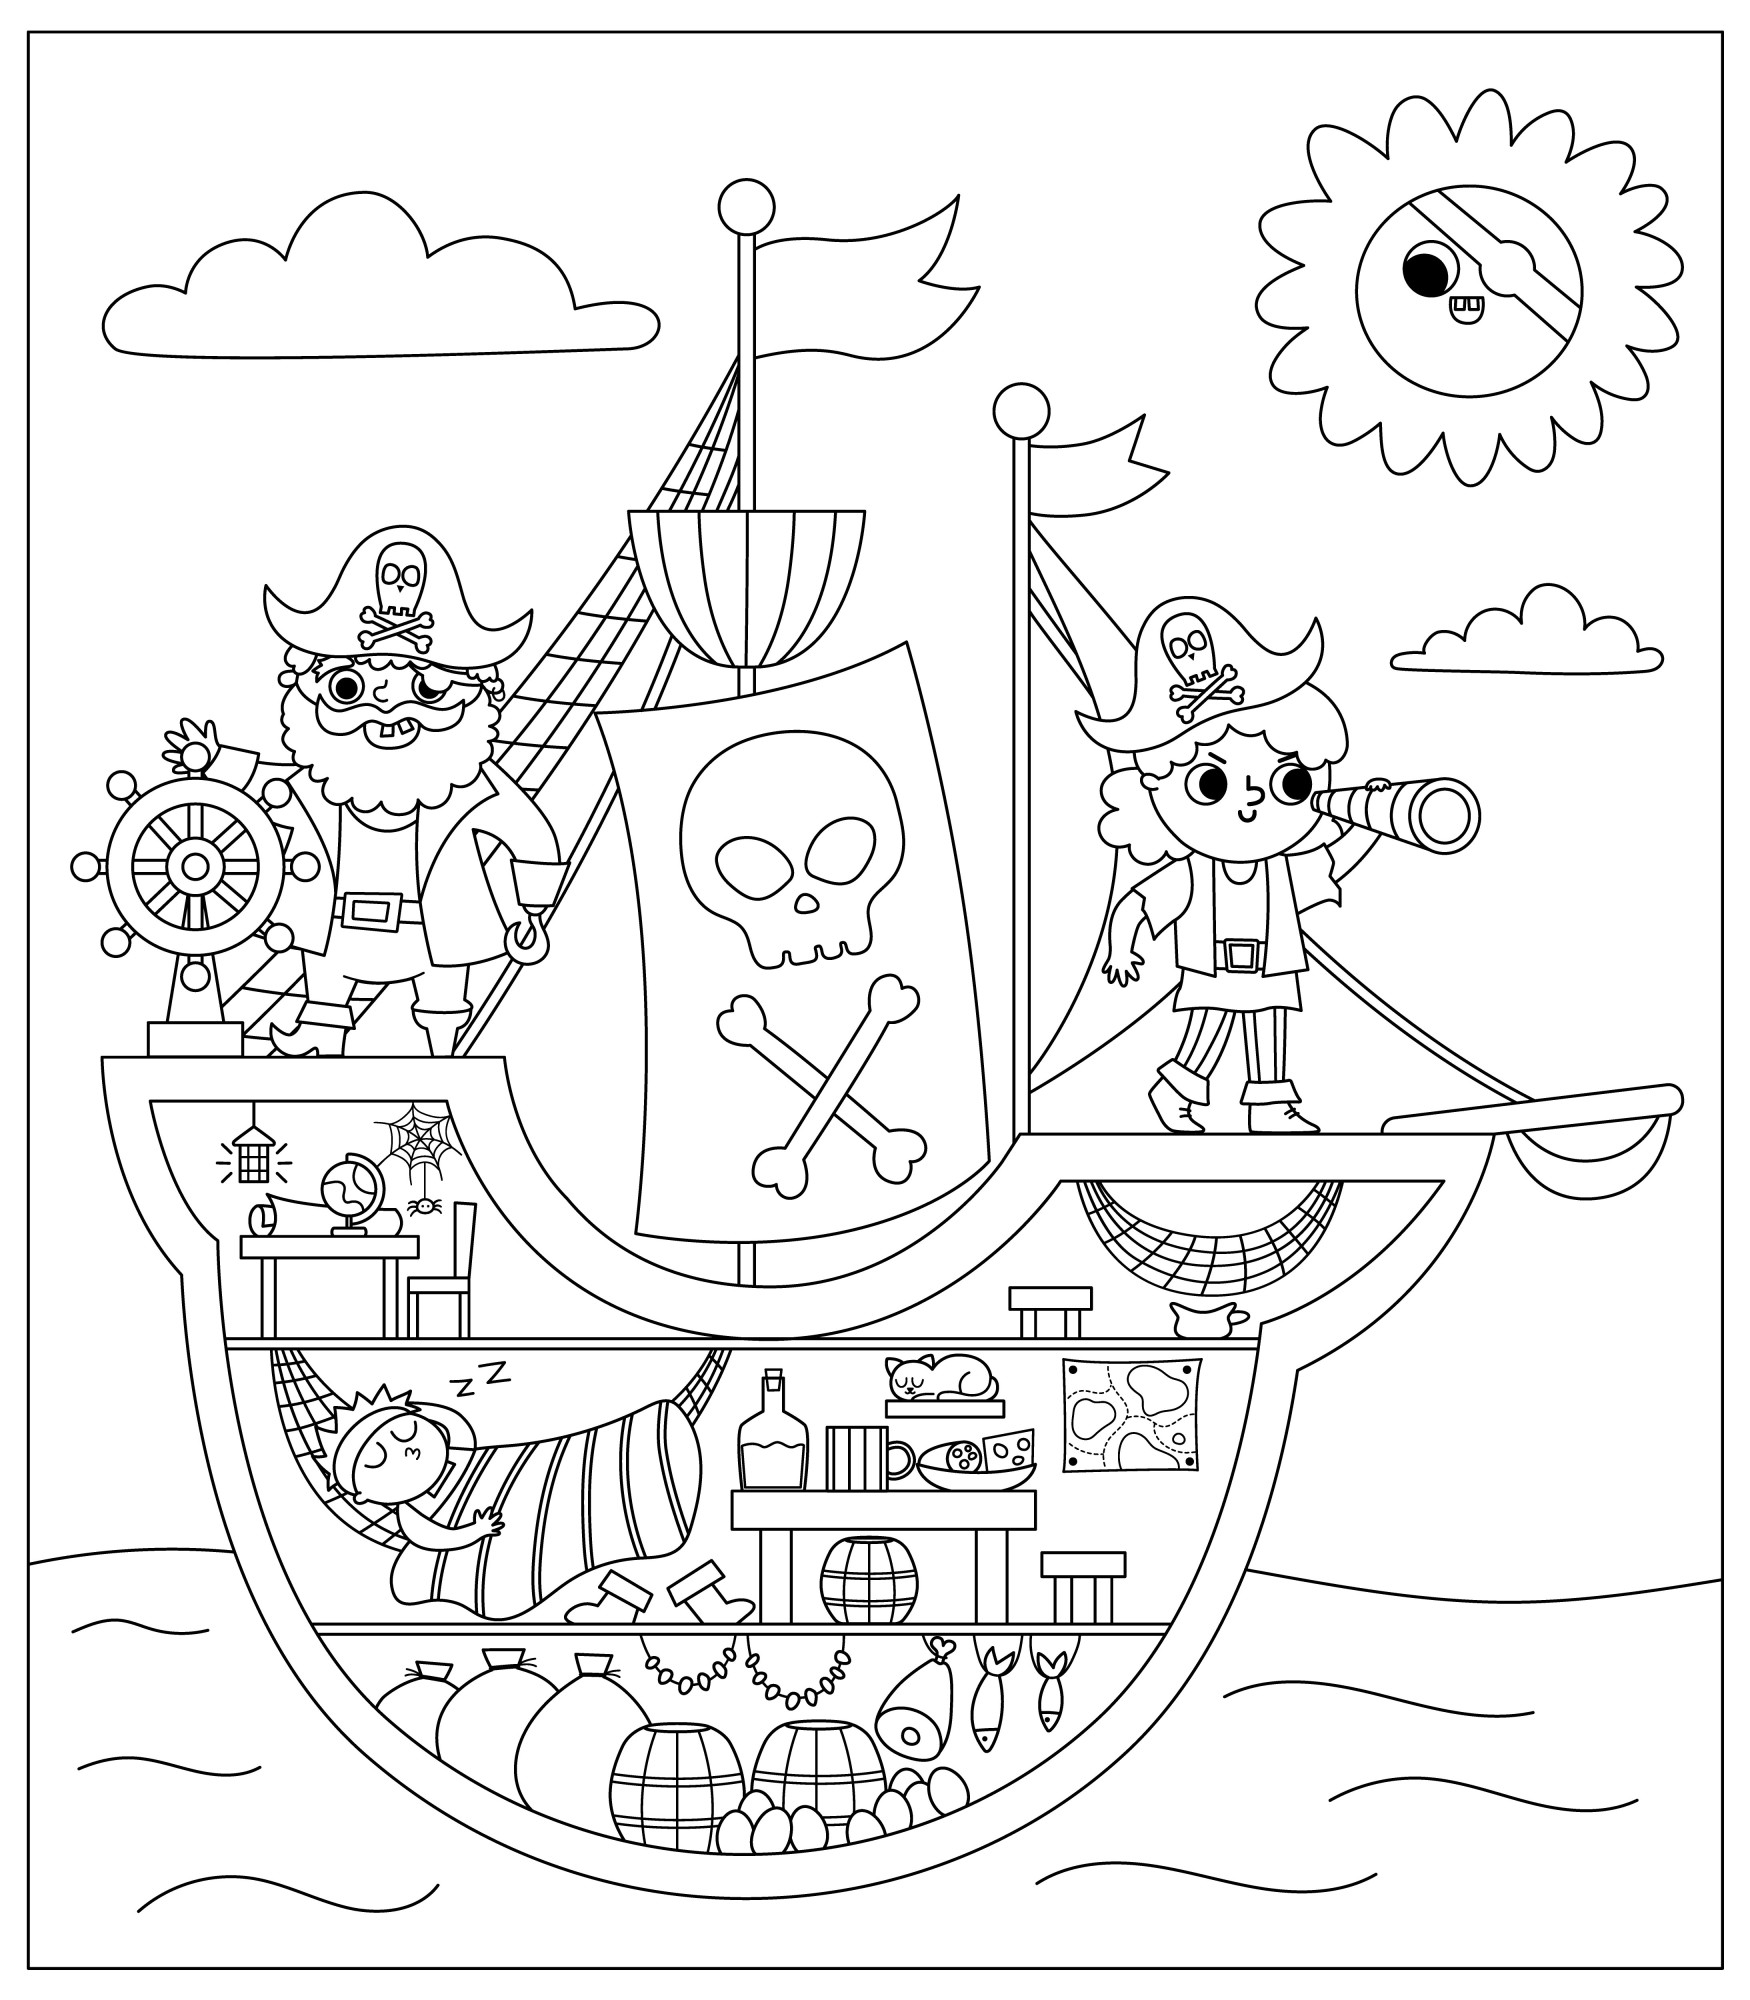 Раскраска для детей: пиратский корабль с грузовым трюмом и пиратами на борту